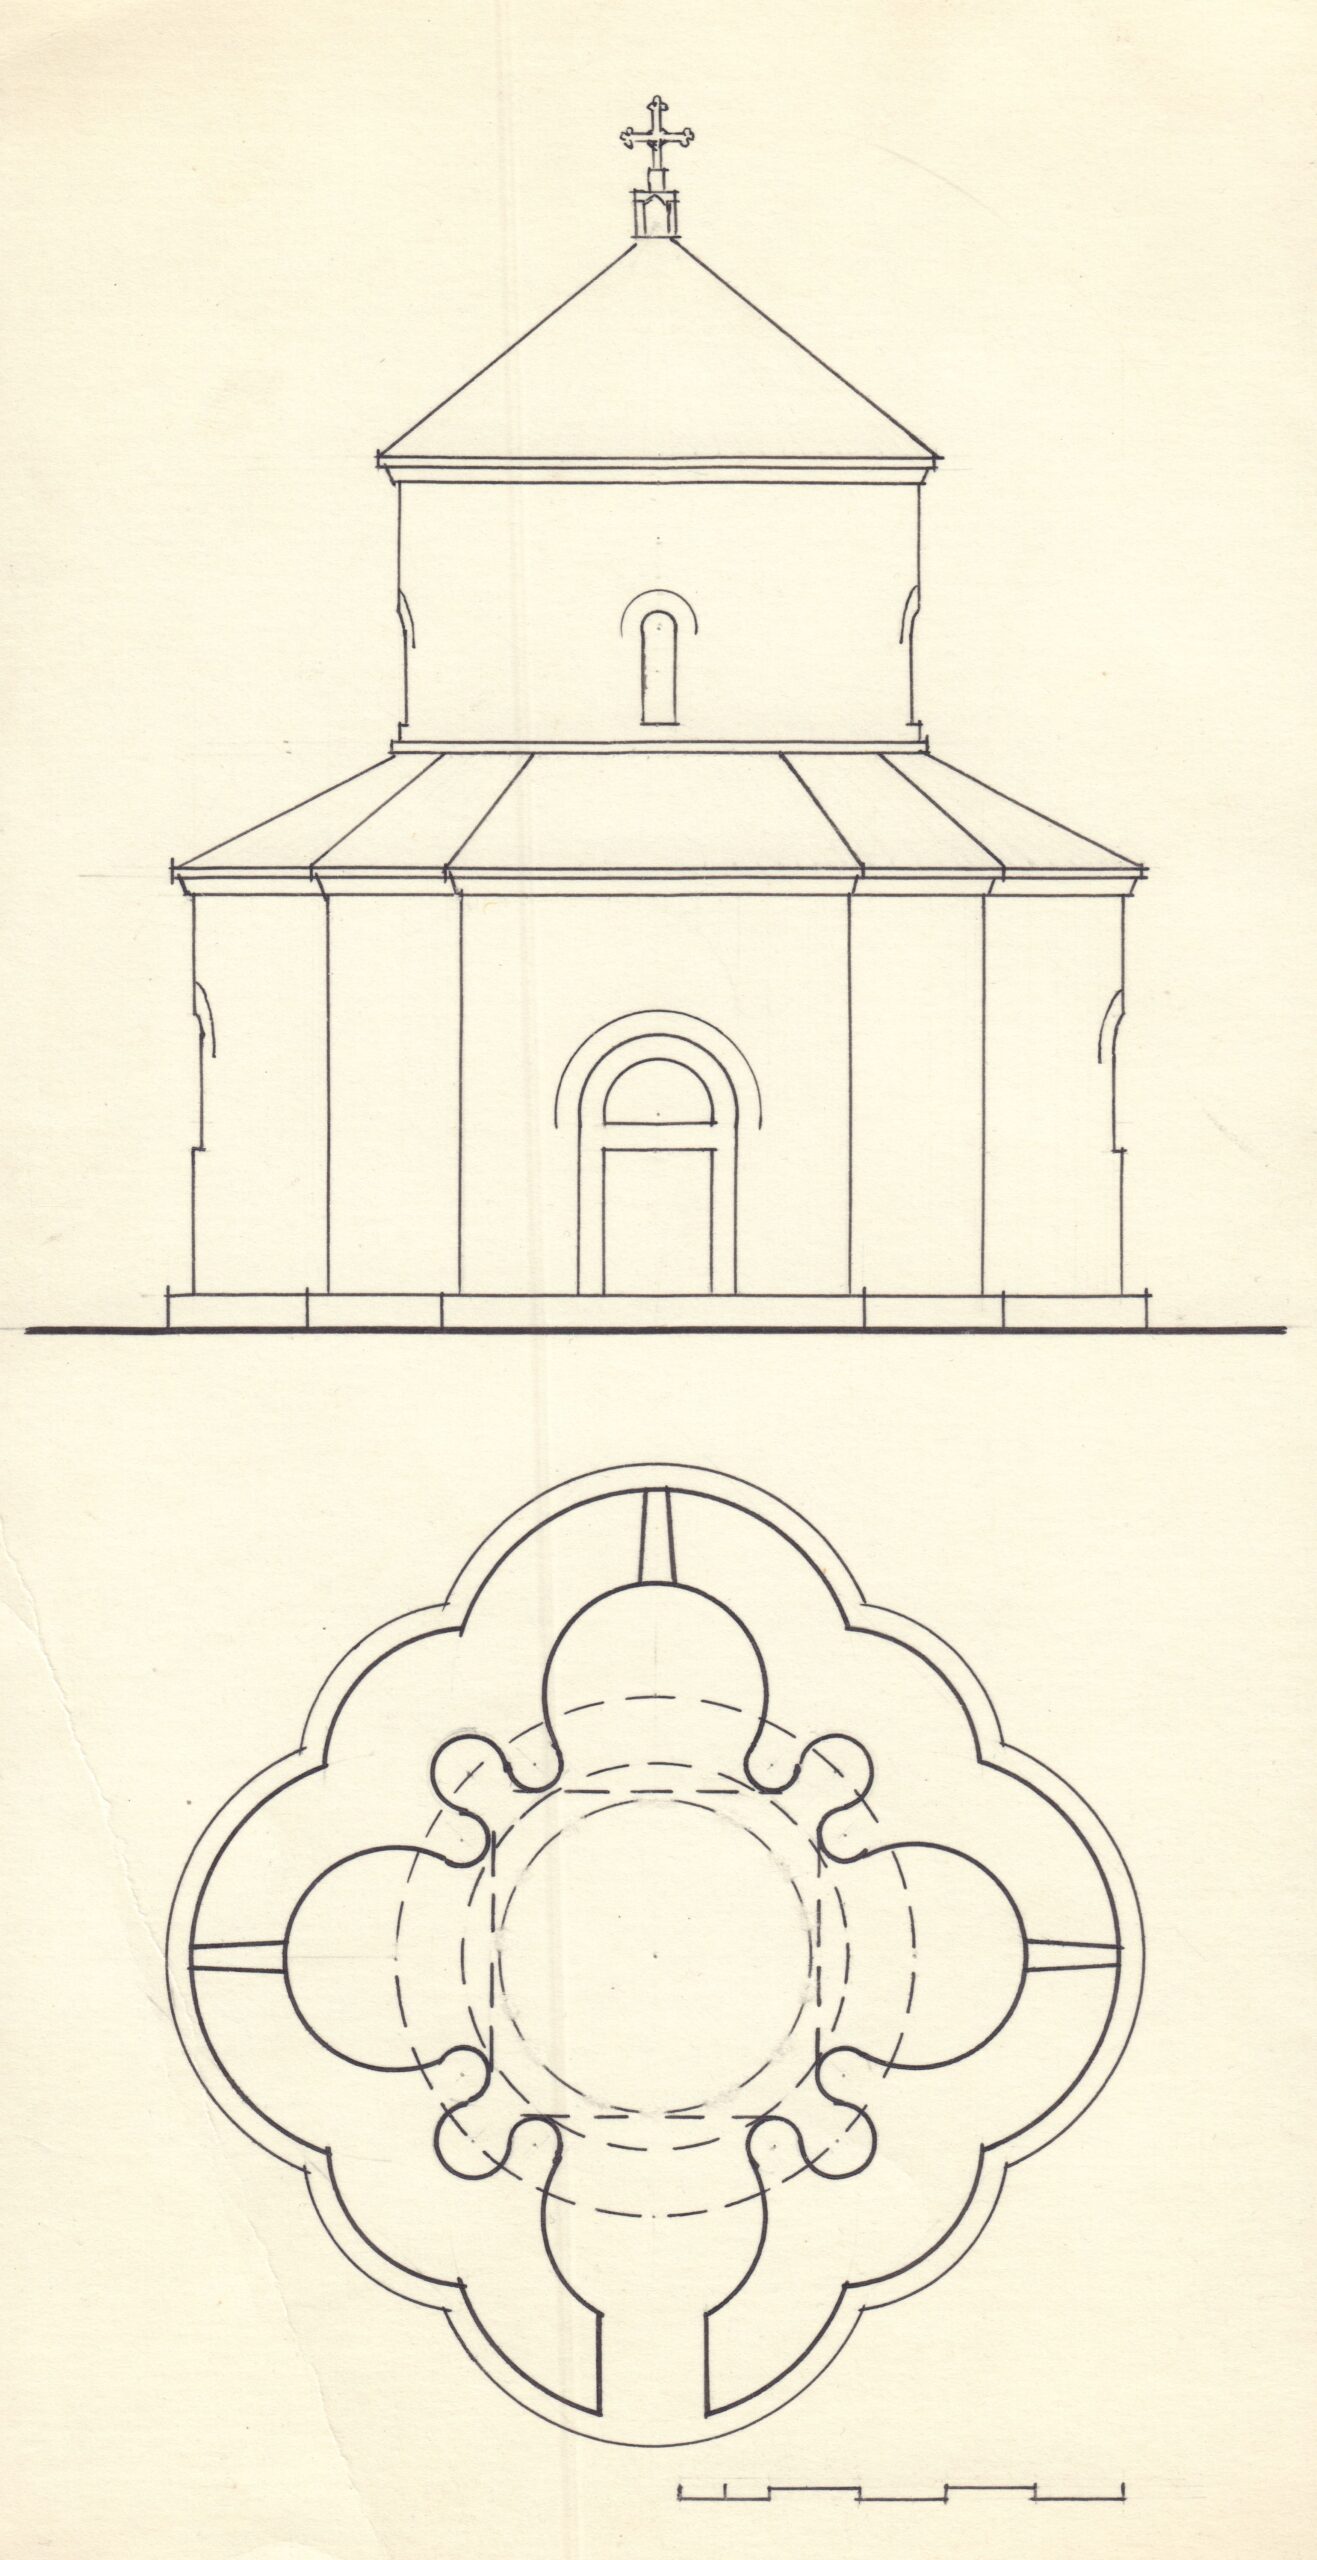 Եկեղեցու վերակազմության տարբերակ՝ գլանաձև գմբեթաթմբուկով